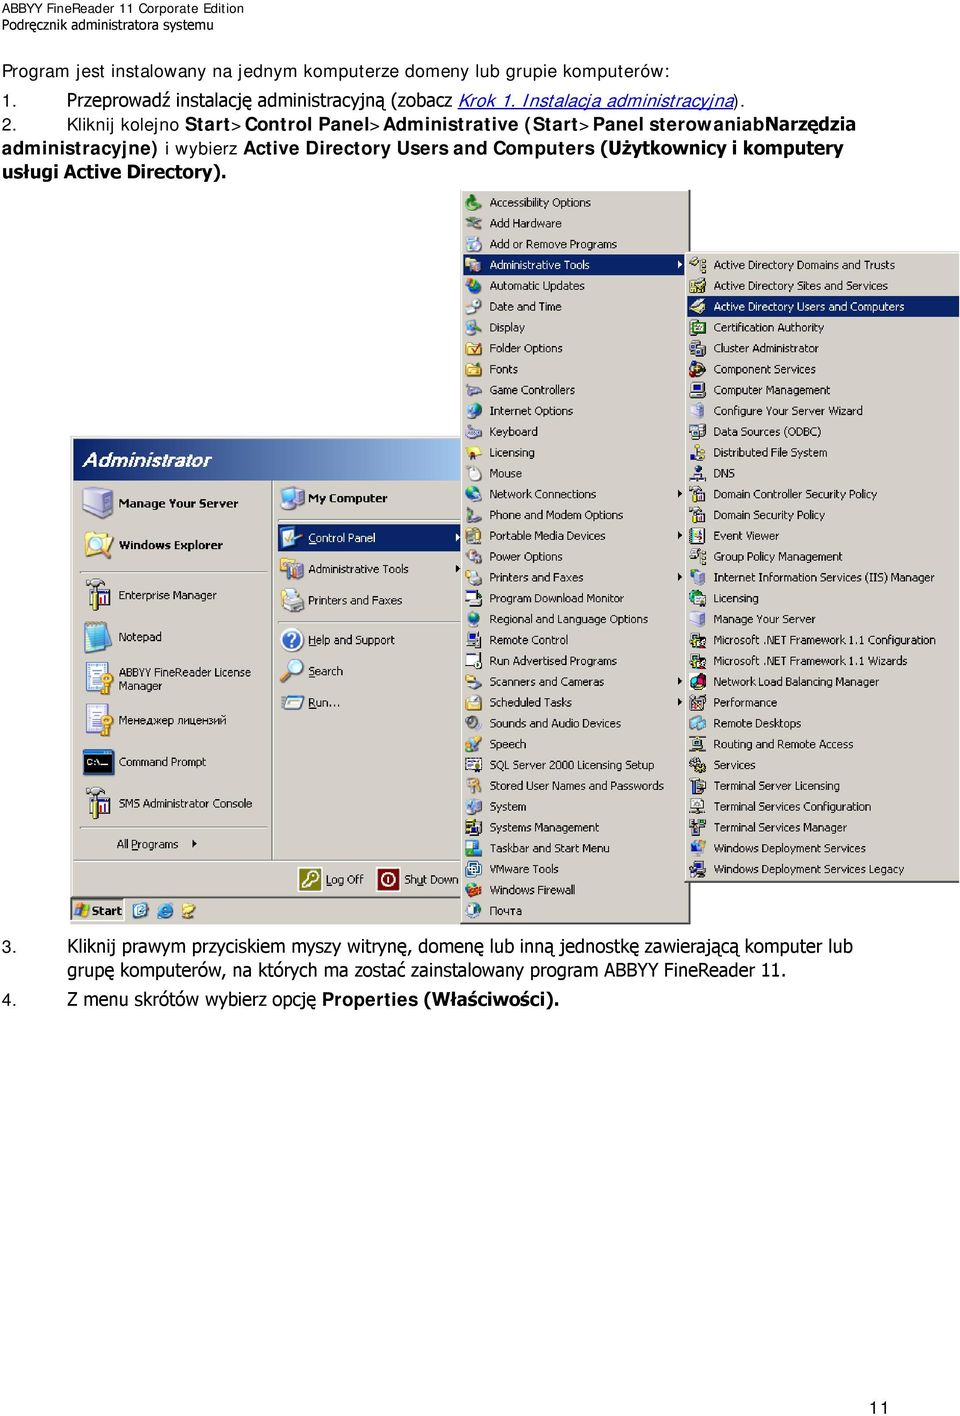 Kliknij kolejno Start>Control Panel>Administrative (Start>Panel sterowaniabnarzędzia administracyjne) i wybierz Active Directory Users and Computers